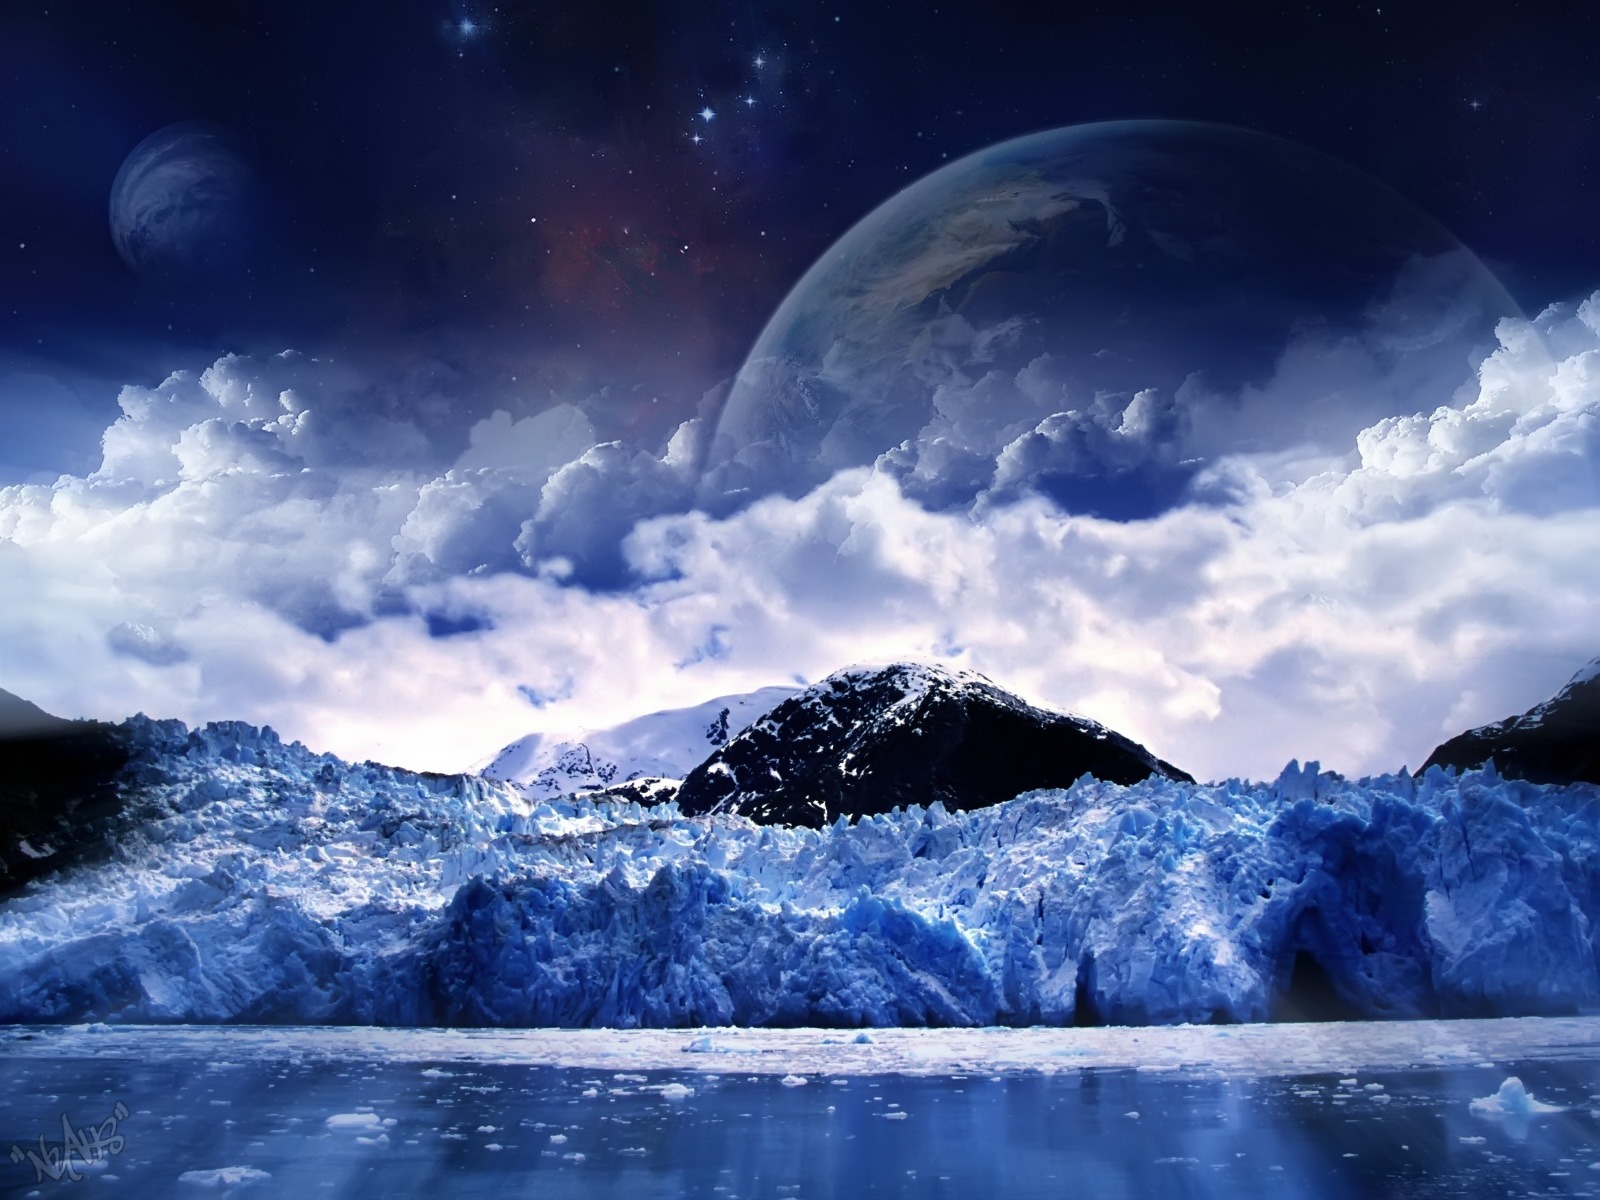 Fond d'ecran Mer de glace et lune